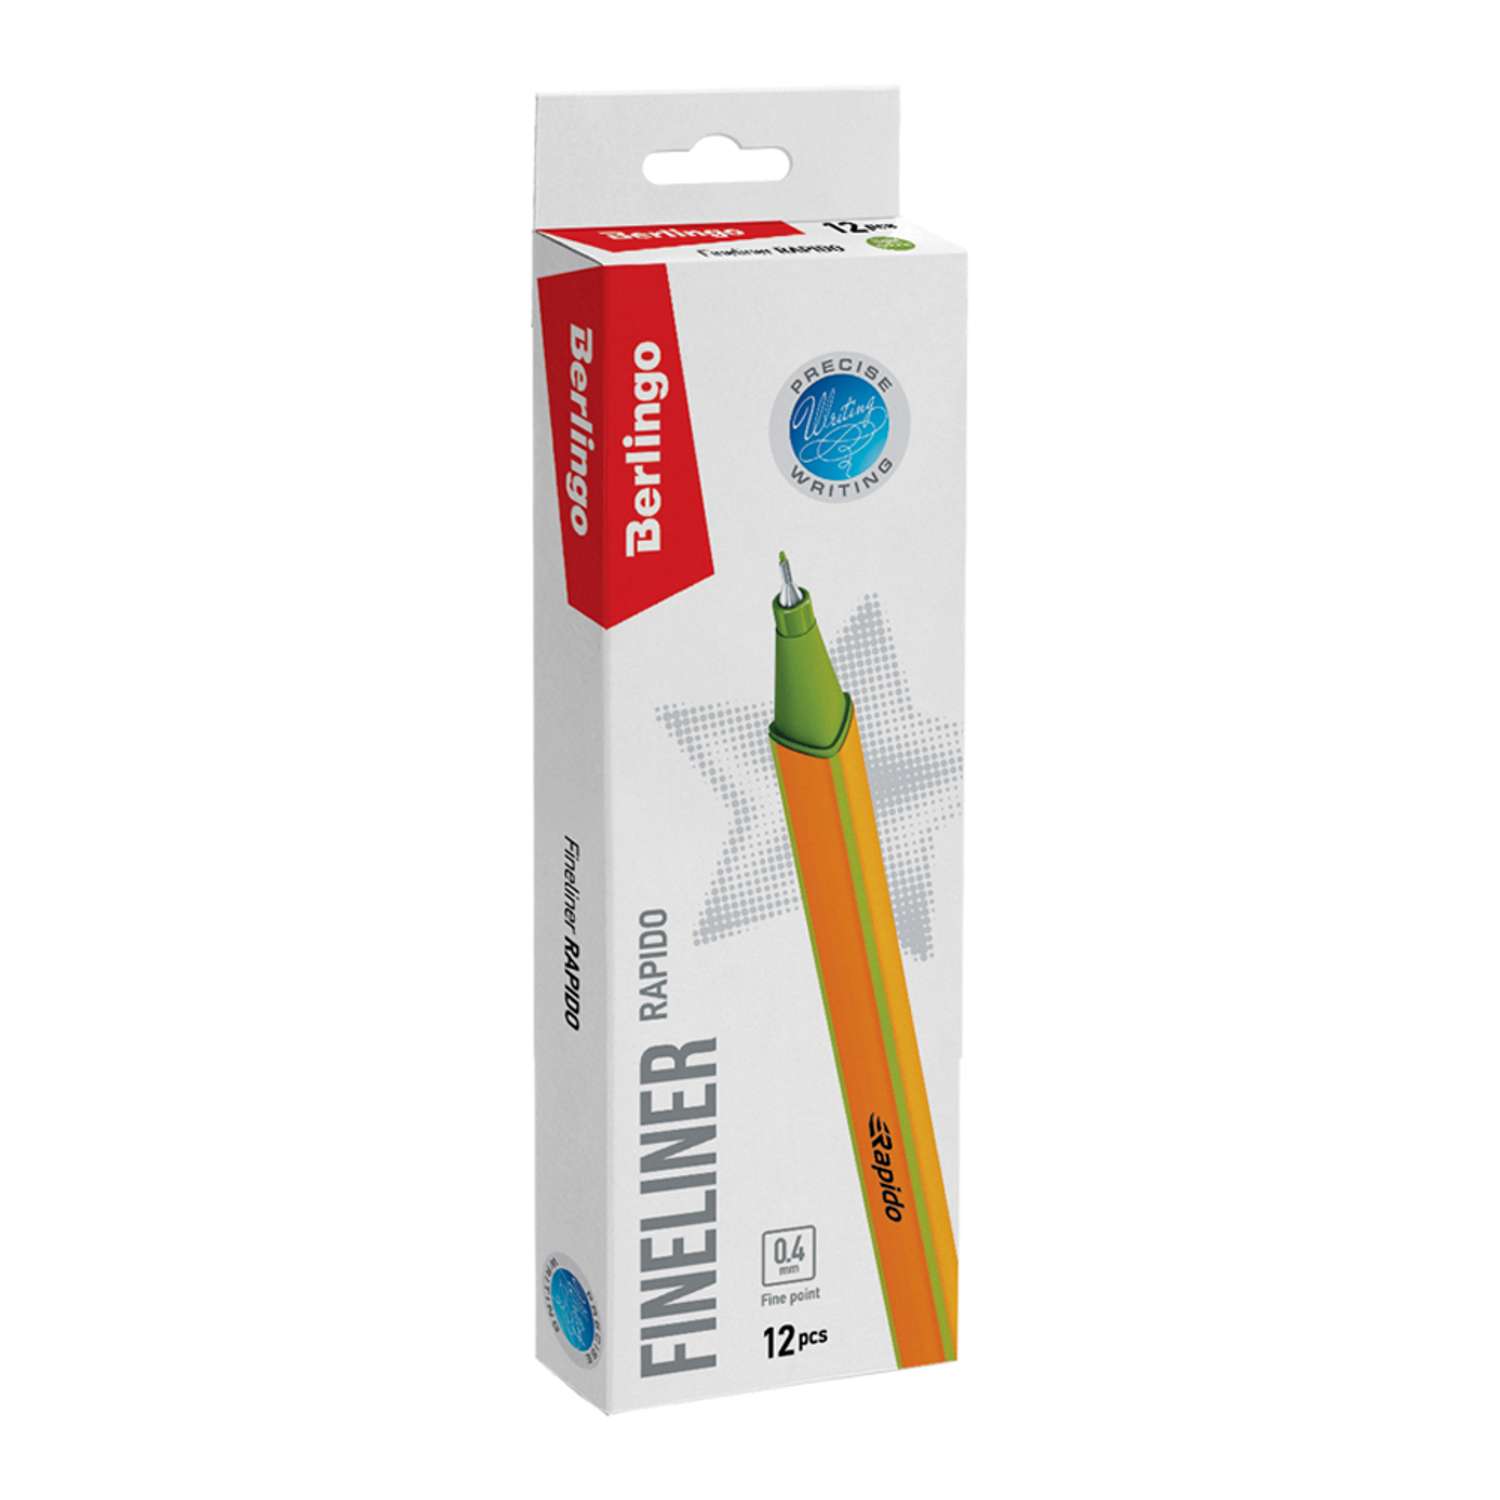 Ручка капиллярная BERLINGO Rapido светло-зеленая 04мм трехгранная набор 12 шт - фото 2